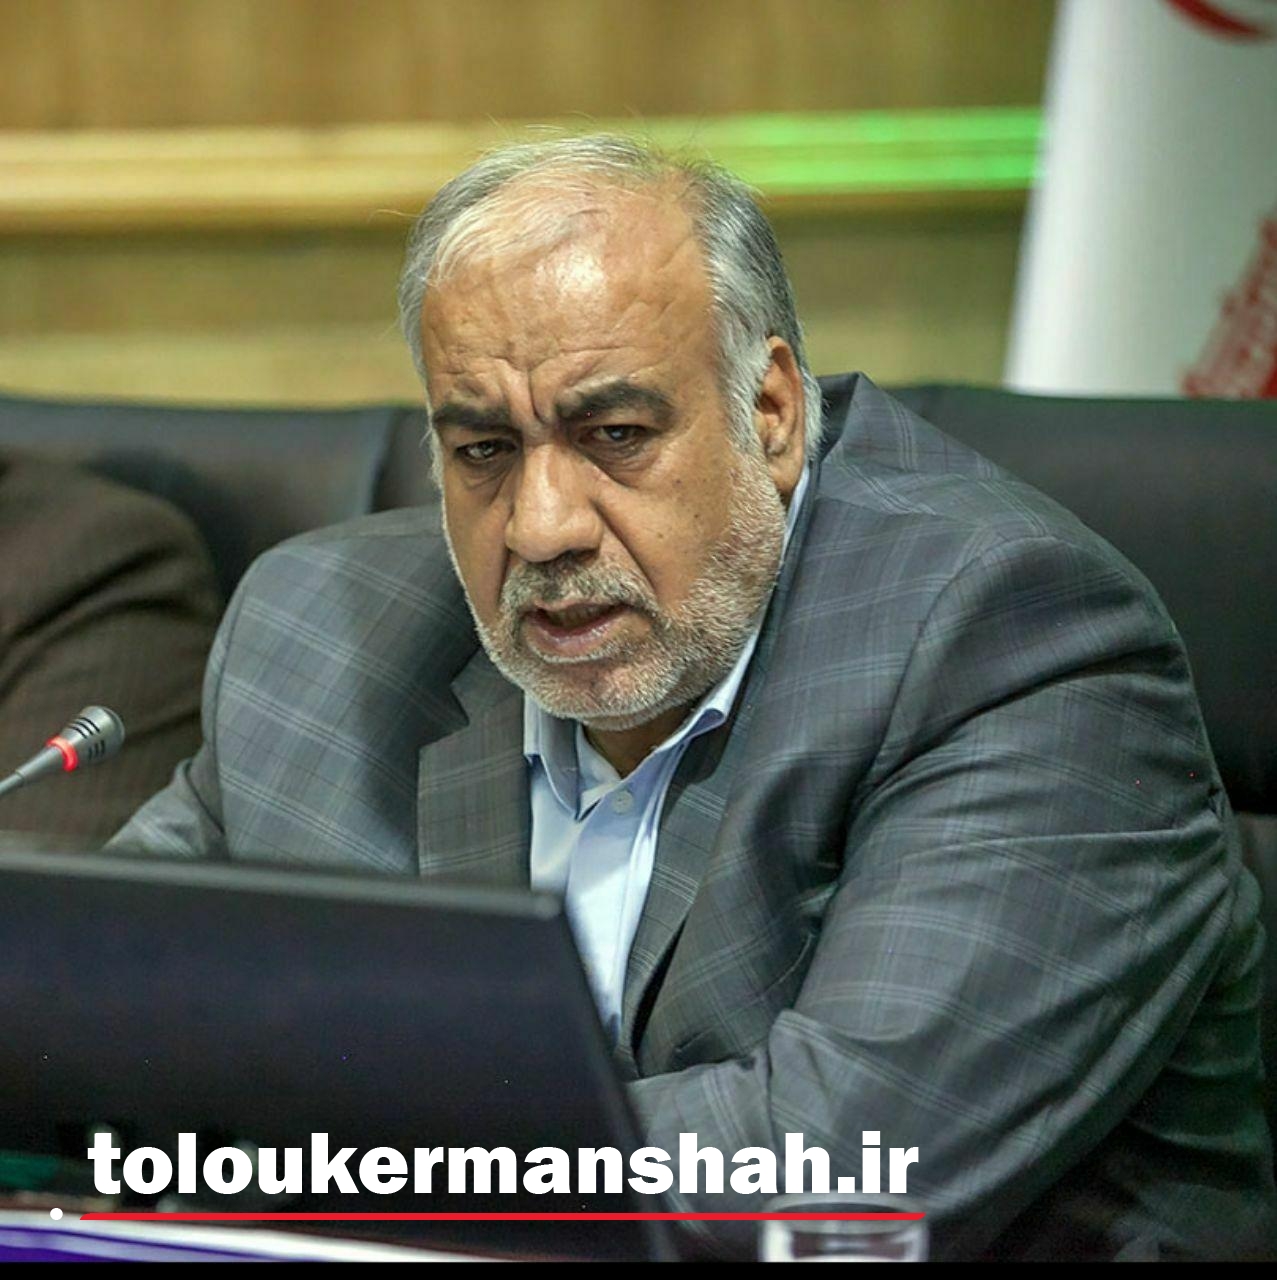 شهرداری کرمانشاه روزانه  ۷۰ میلیون تومان جریمه میشود